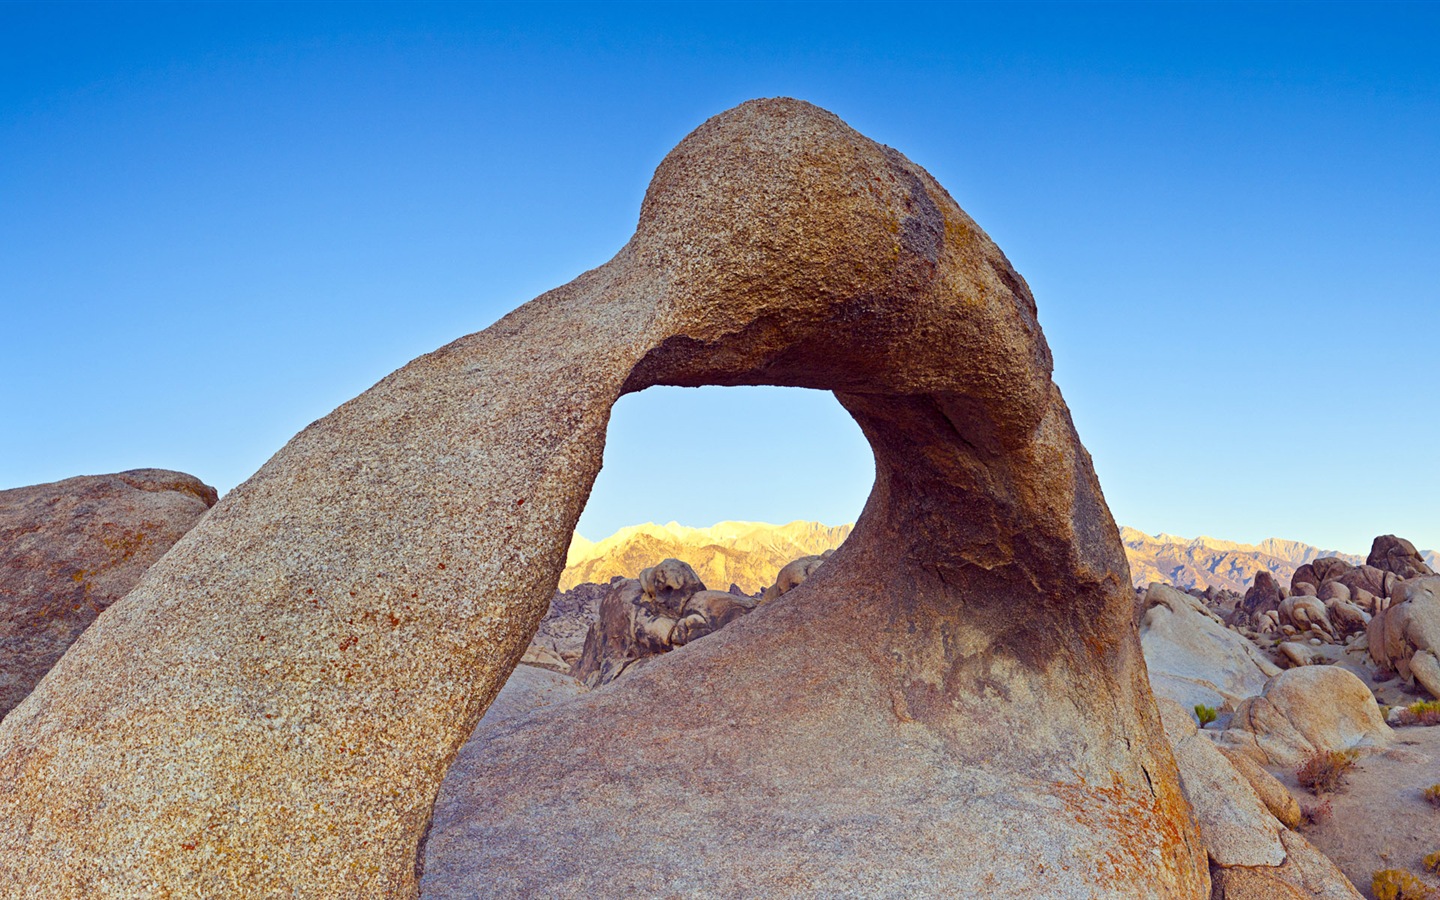 Les déserts chauds et arides, de Windows 8 fonds d'écran widescreen panoramique #5 - 1440x900